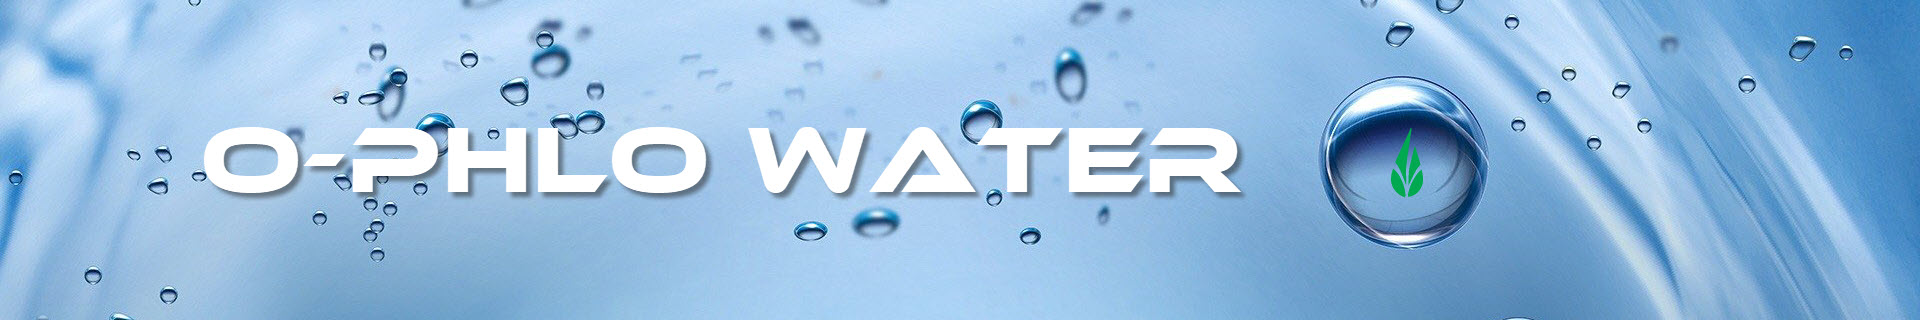 O-Phlo Water Banner Image